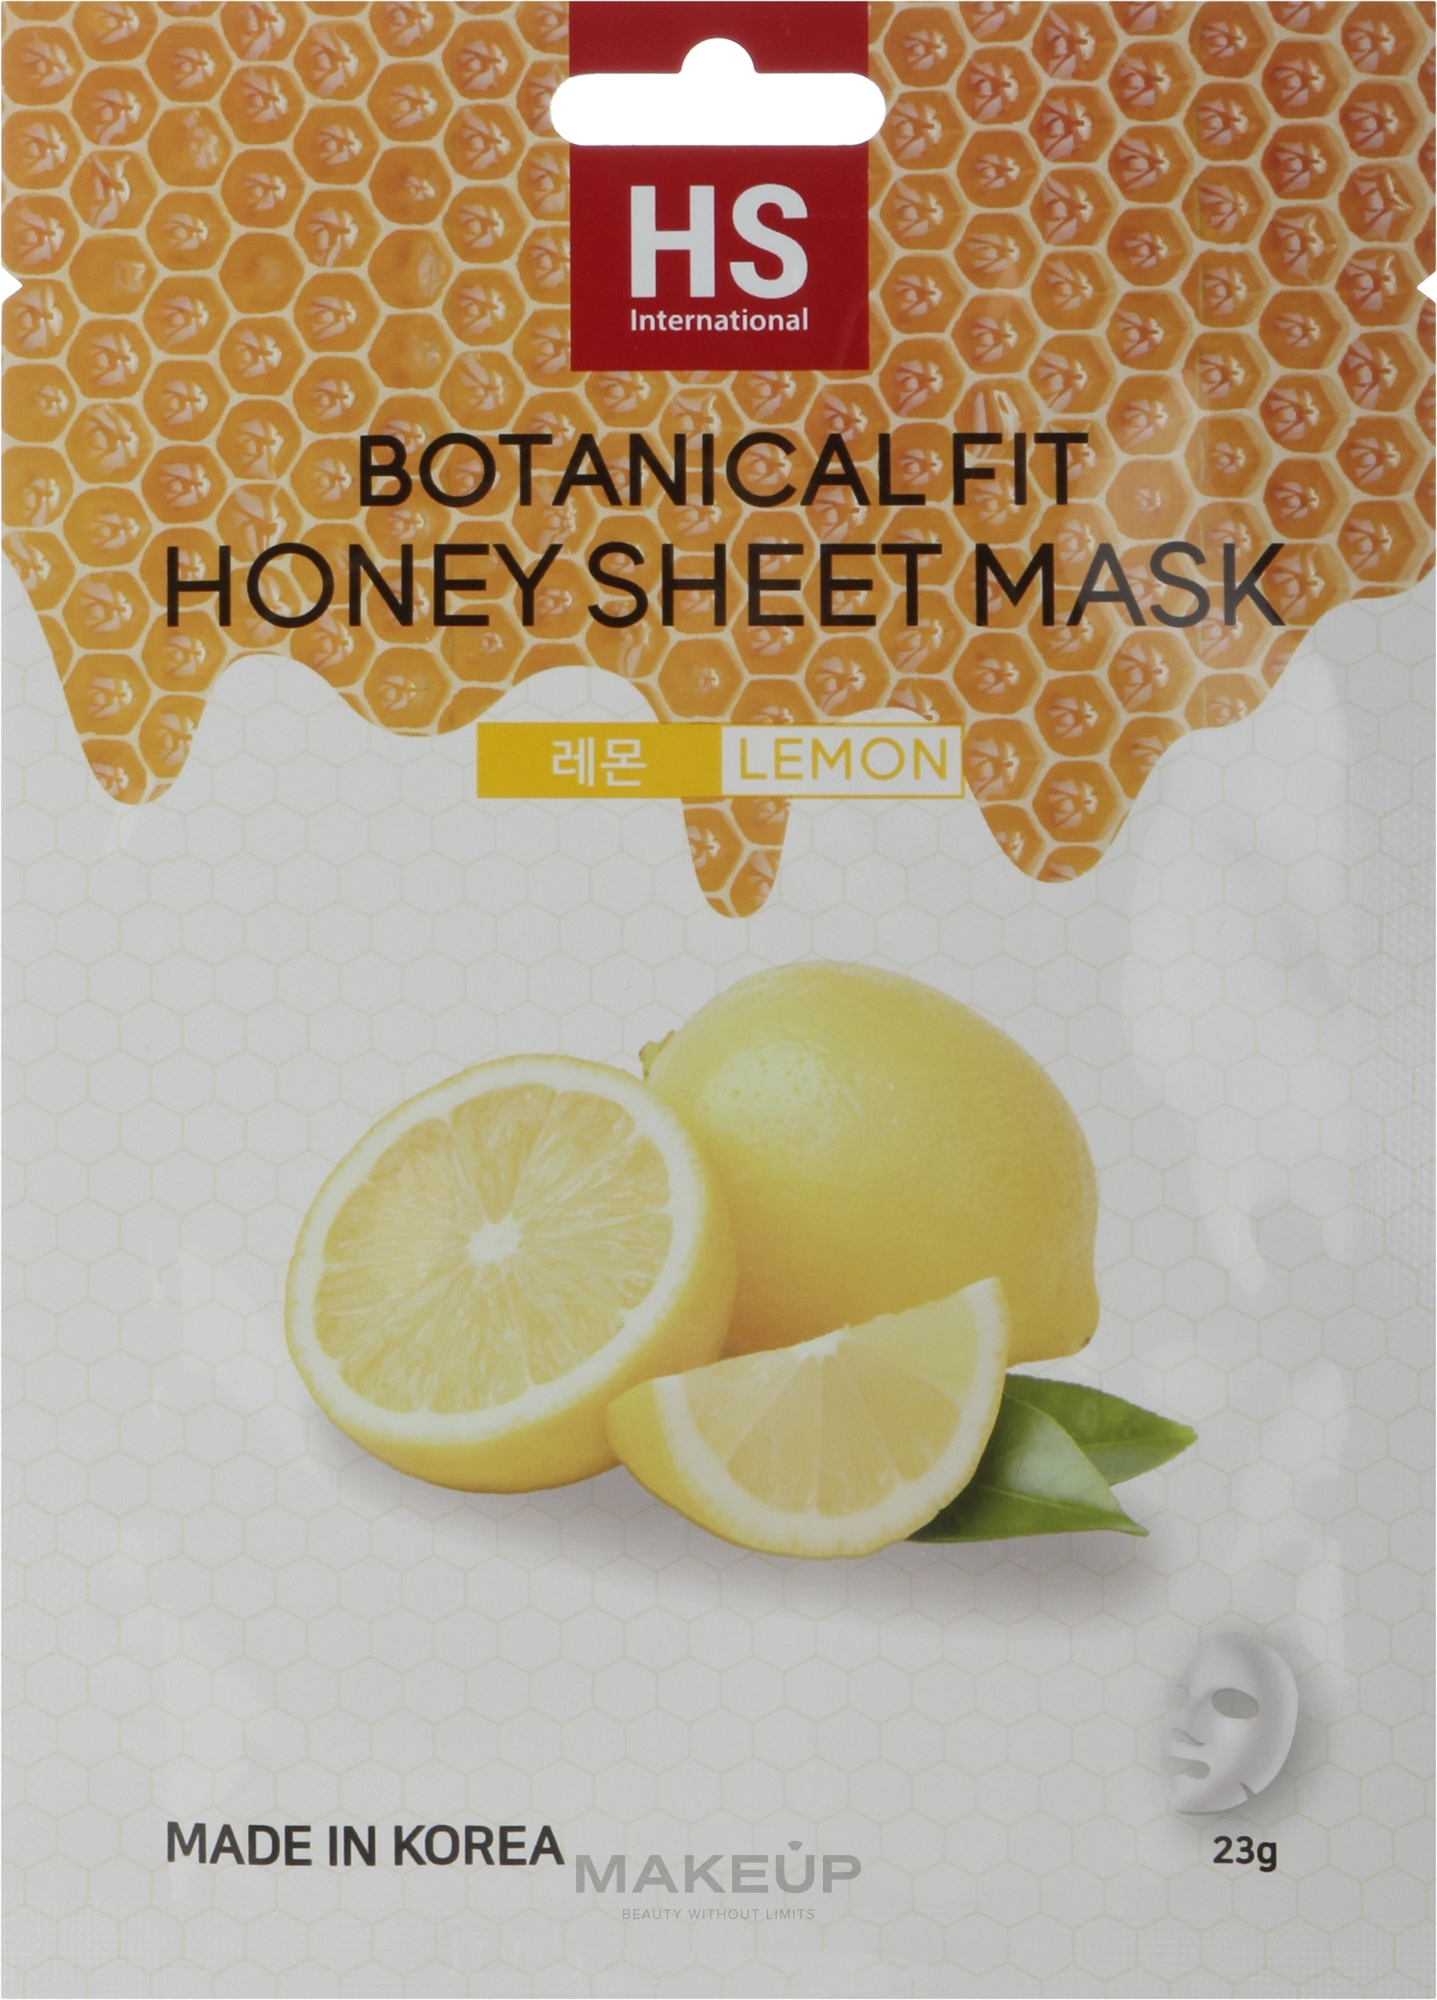 Маска тканевая для лица с мёдом и экстрактом лимона - V07 Botanical Fit Honey Sheet Mask Lemon — фото 23g